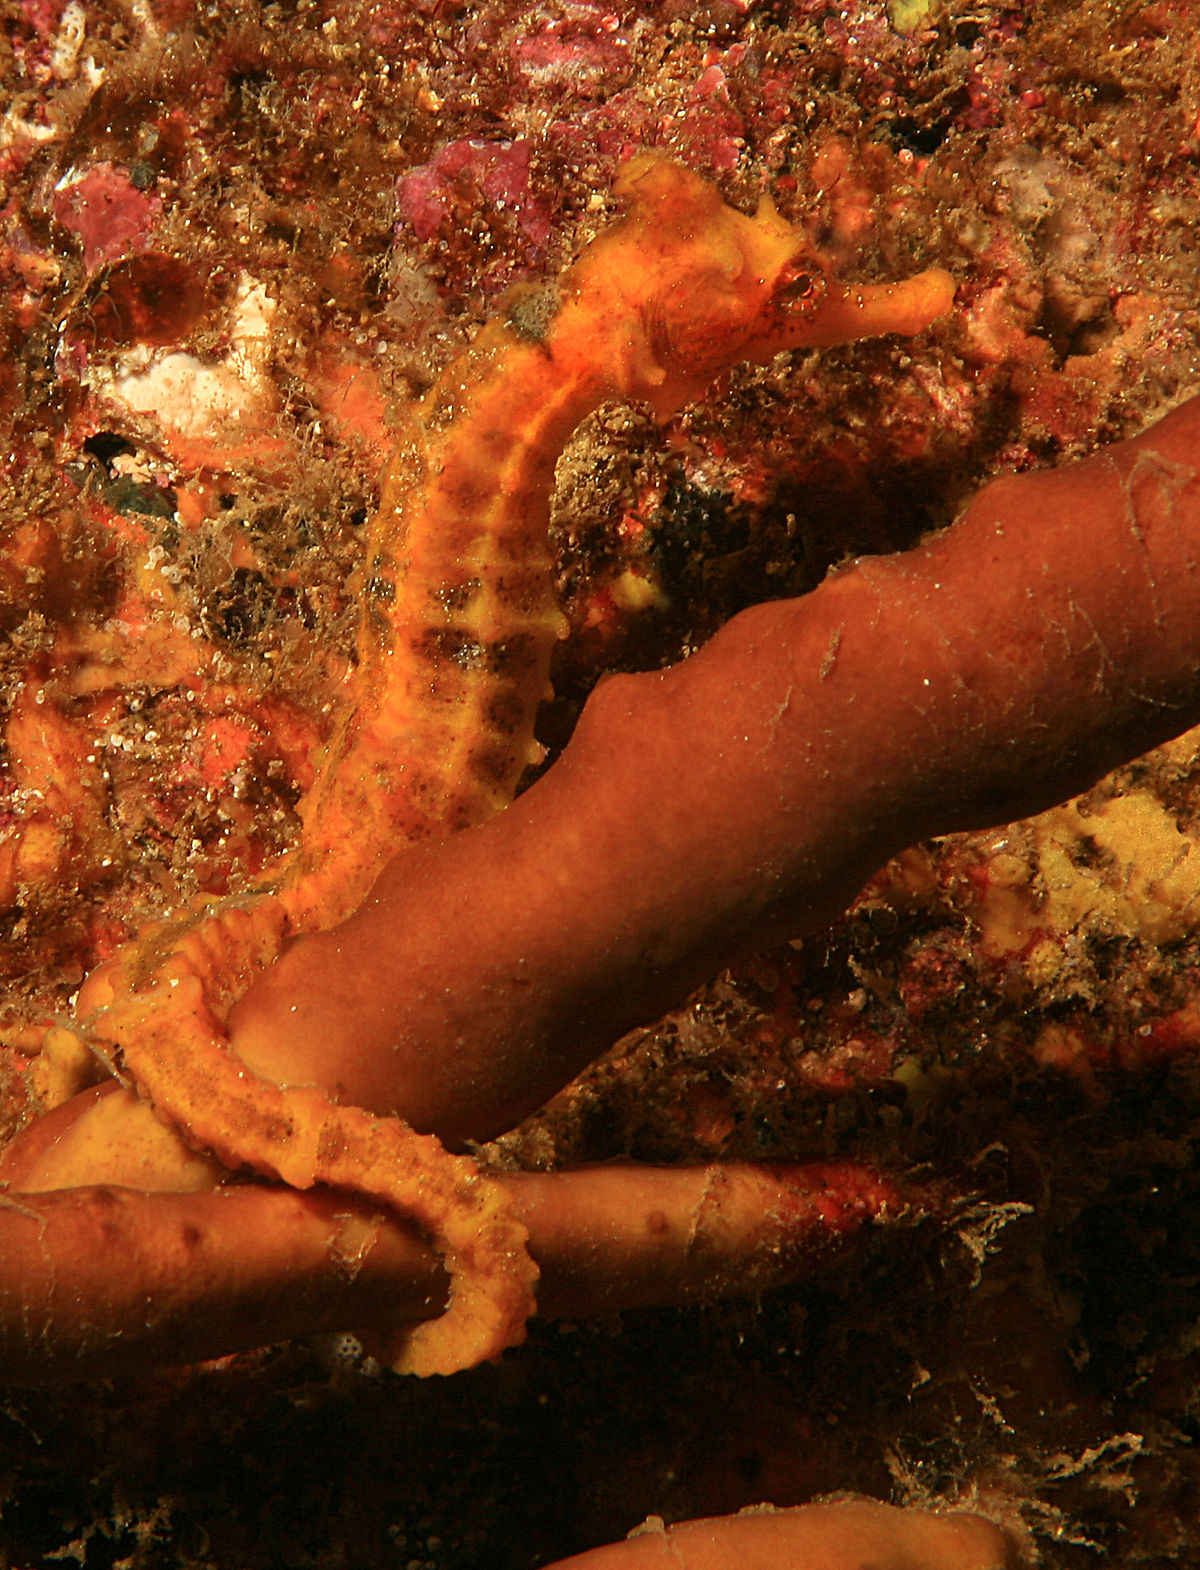 Pacific seahorse - Wikipedia